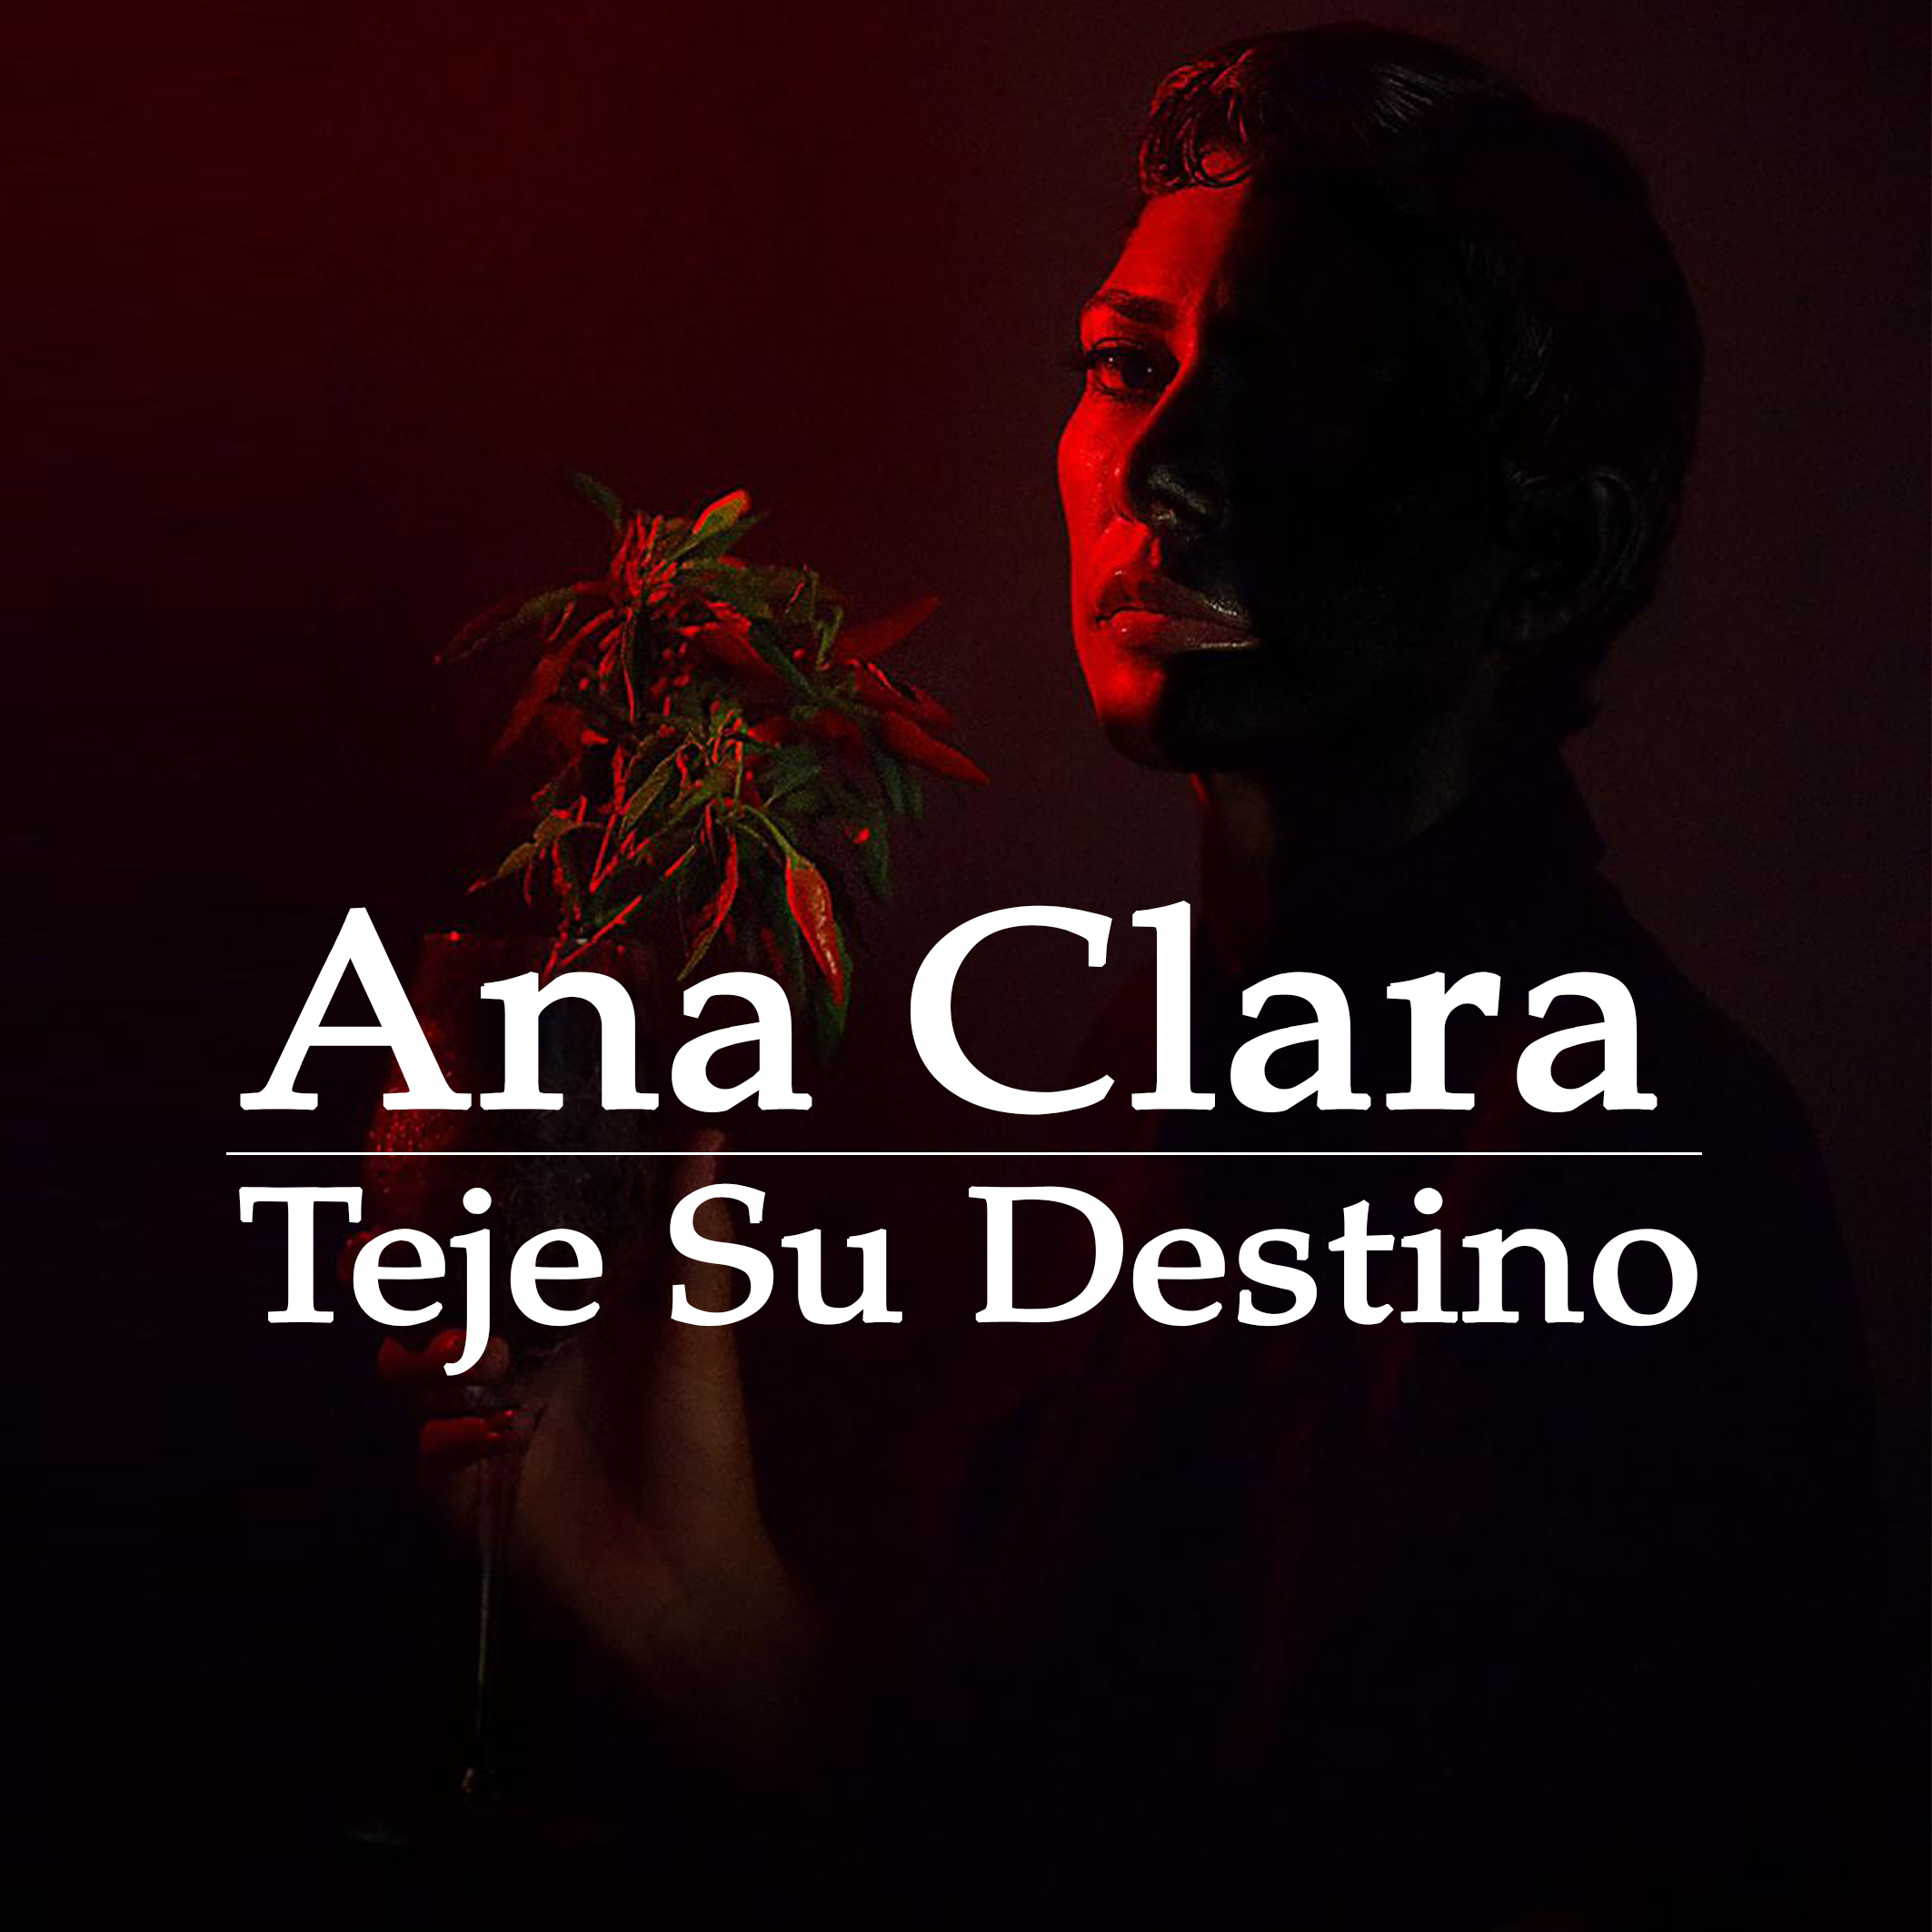 Ana Clara Teje Su Destino